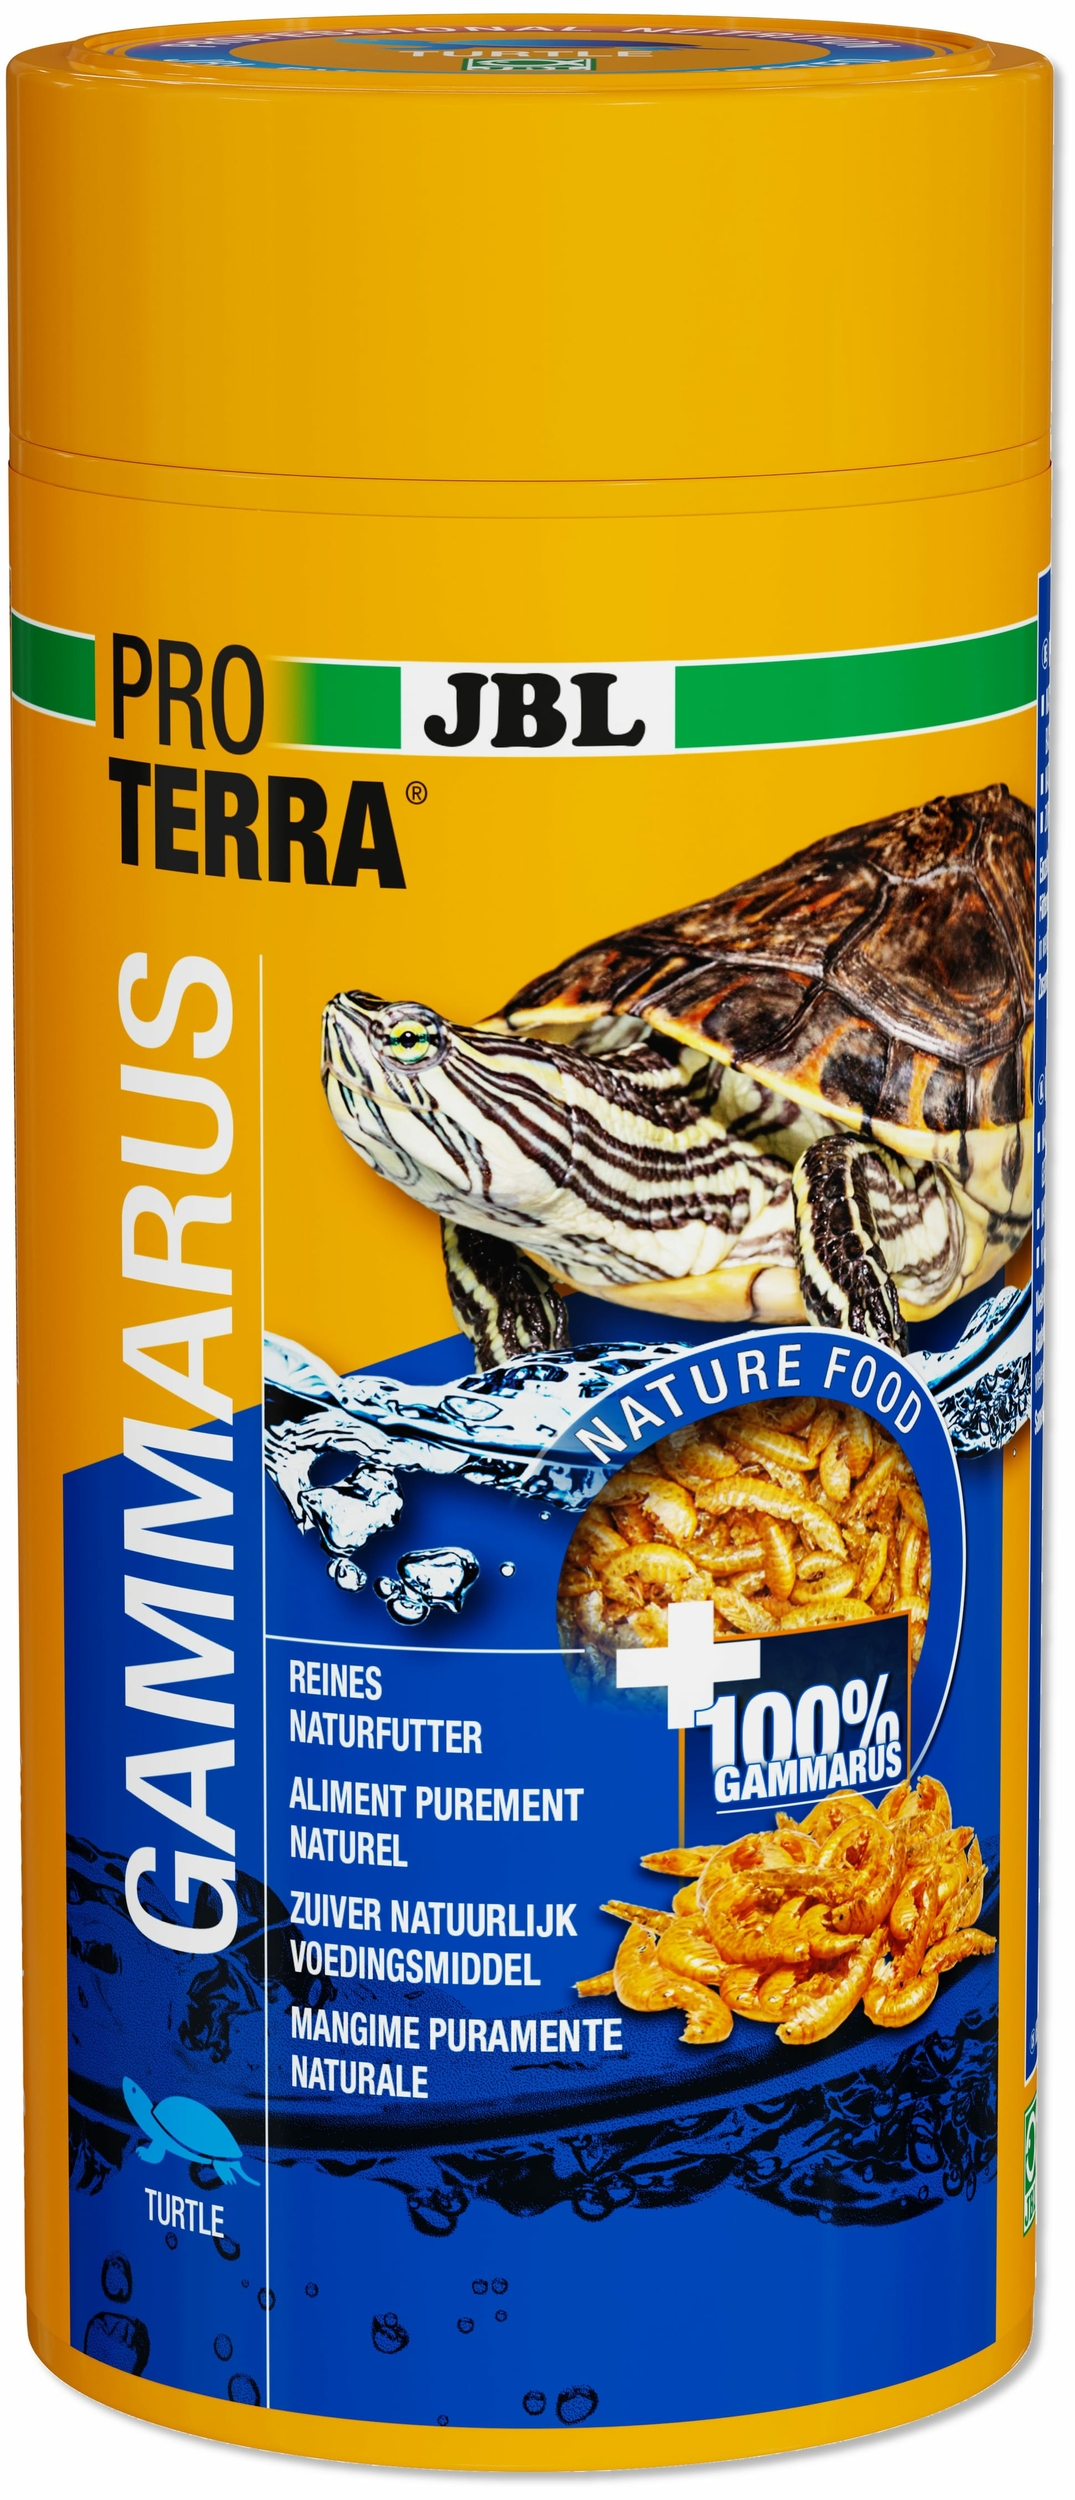 jbl-proterra-gammarus-1000-ml-friandises-a-base-de-gammares-pour-tortues-d-eau-min